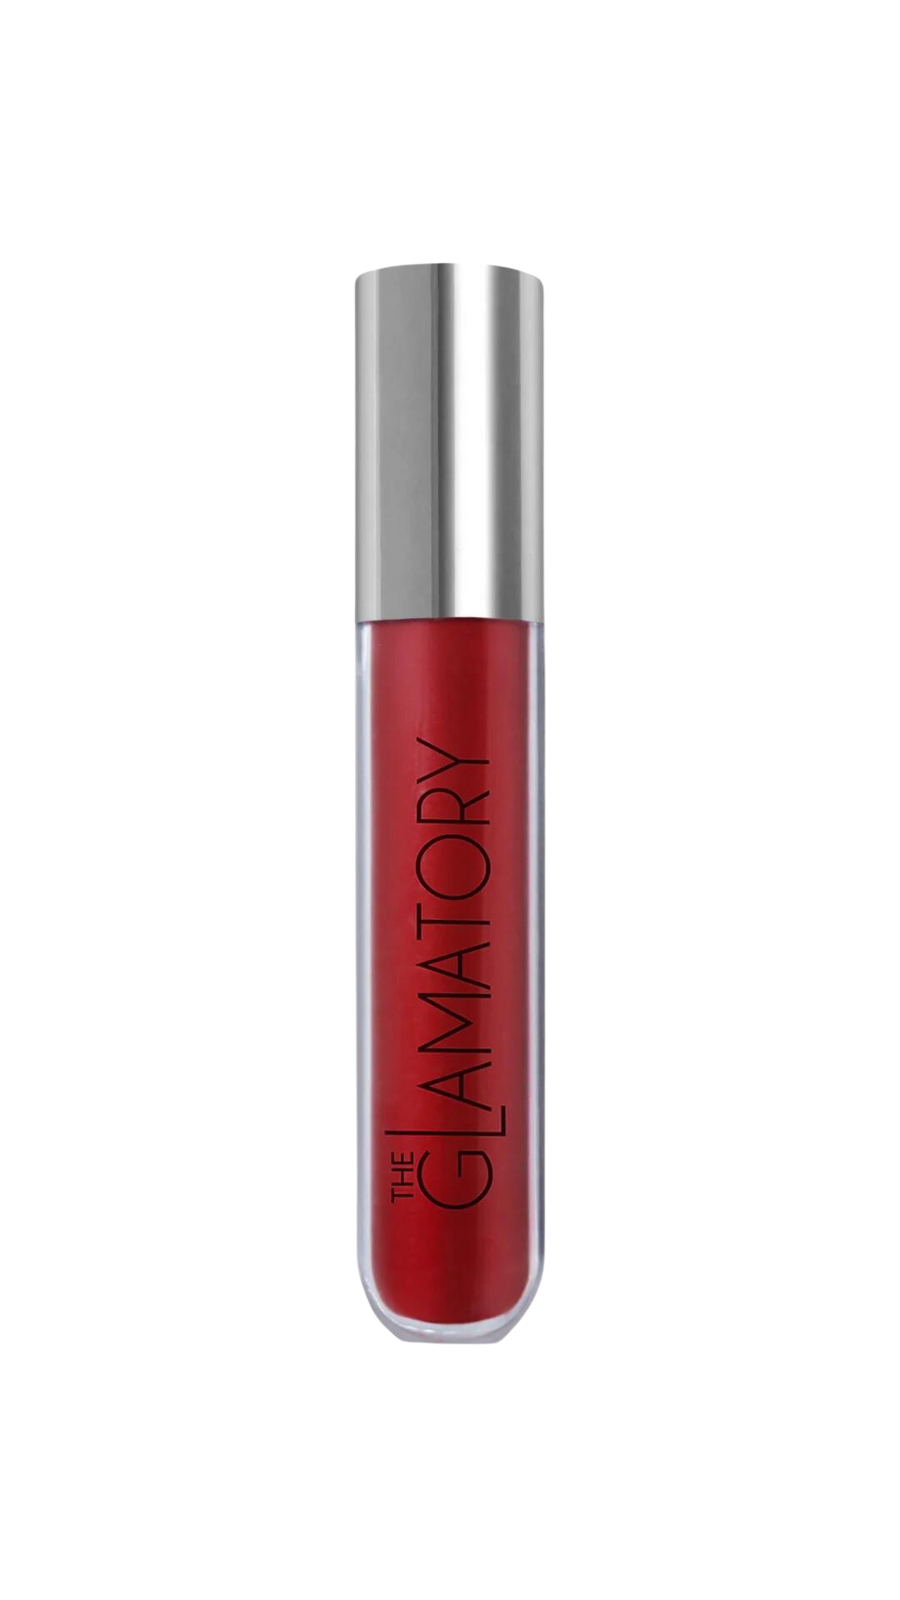 The Glamatory Cherry Bomb Lip Potion Lip Gloss